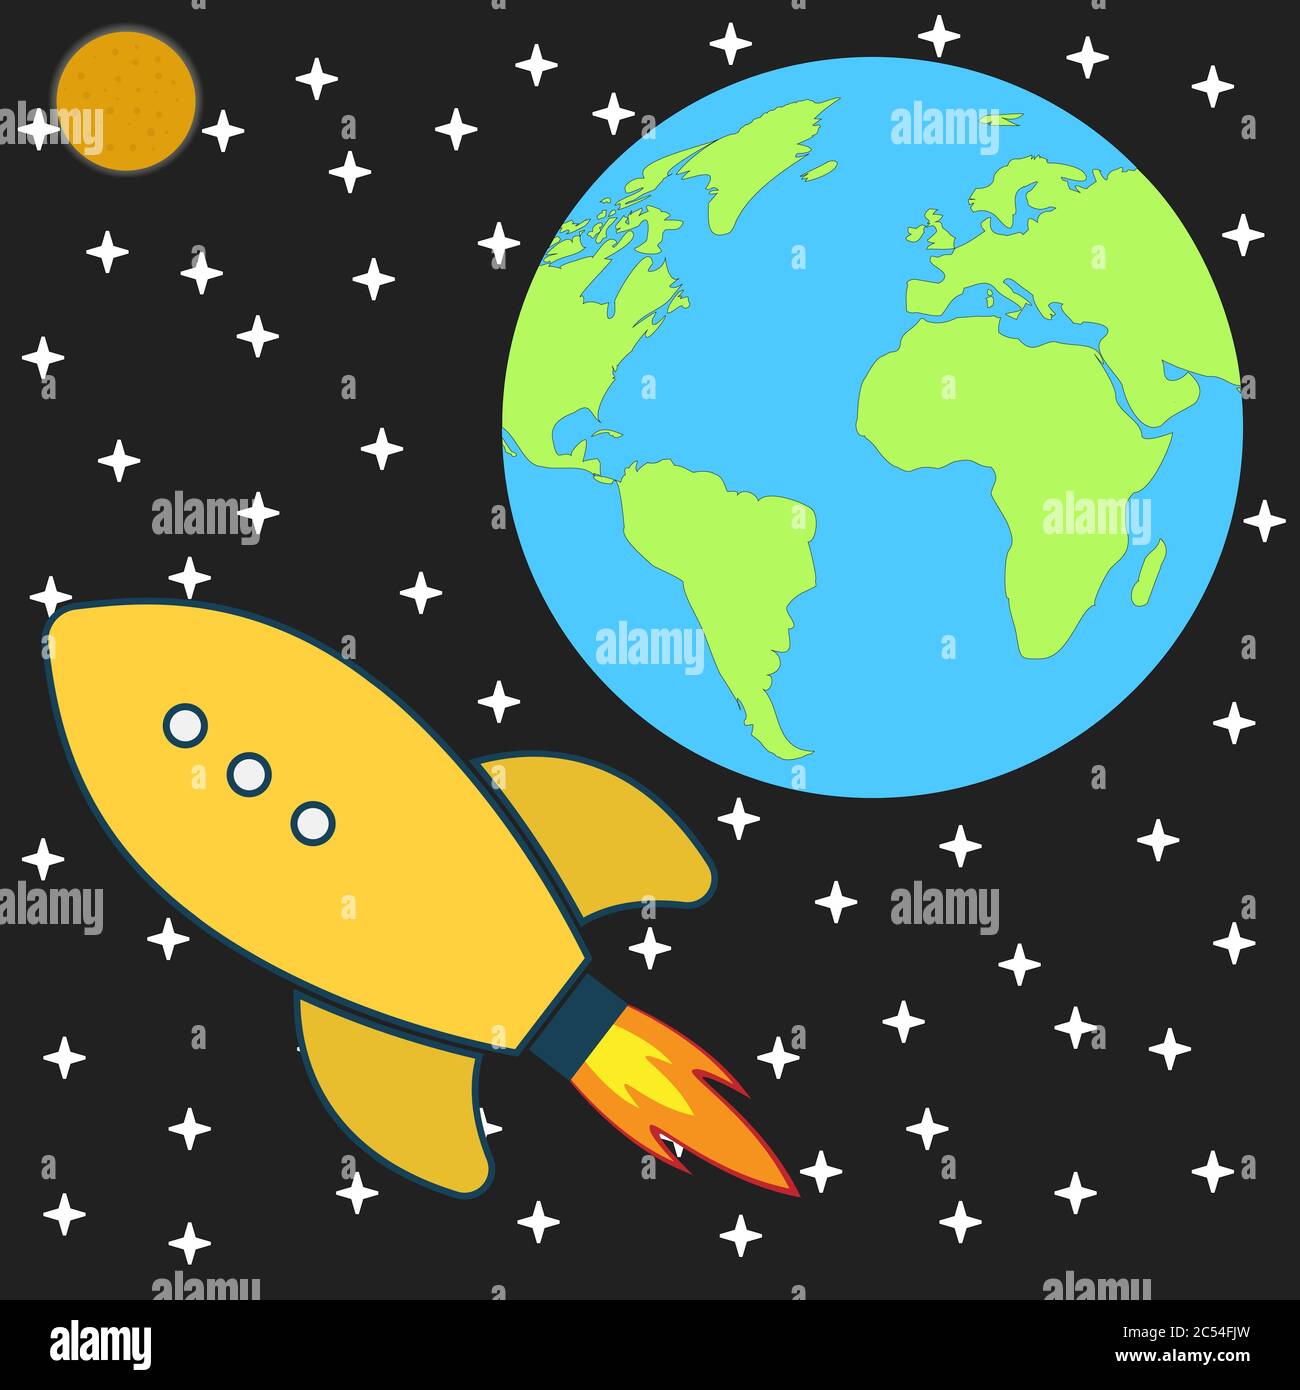 cosmos explore space rocket. eps 10 vector iilustration Stock Vector